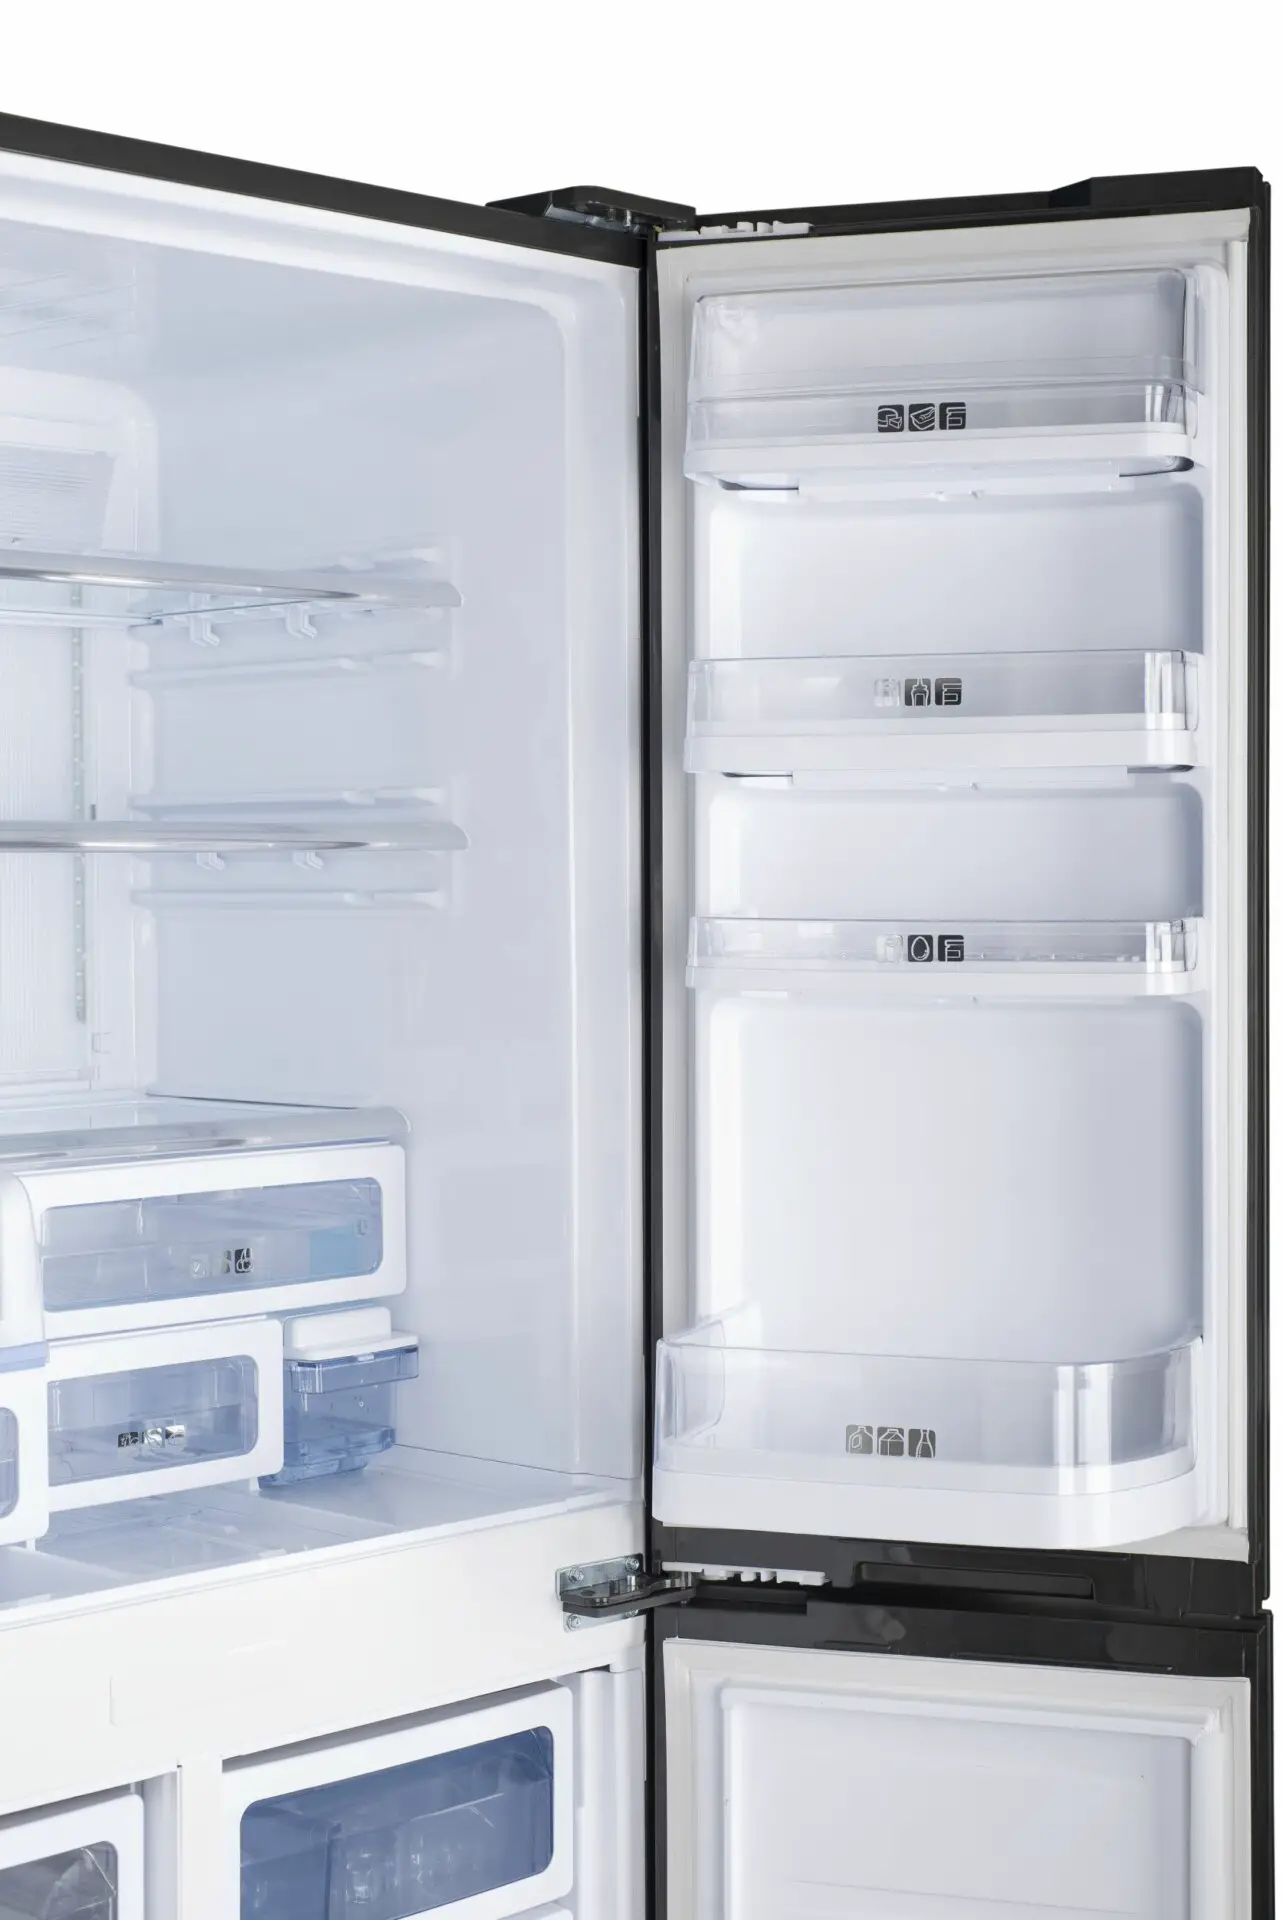 Sollte man ausgeschaltete Kühlschränke offen lassen? 5 wichtige Fakten